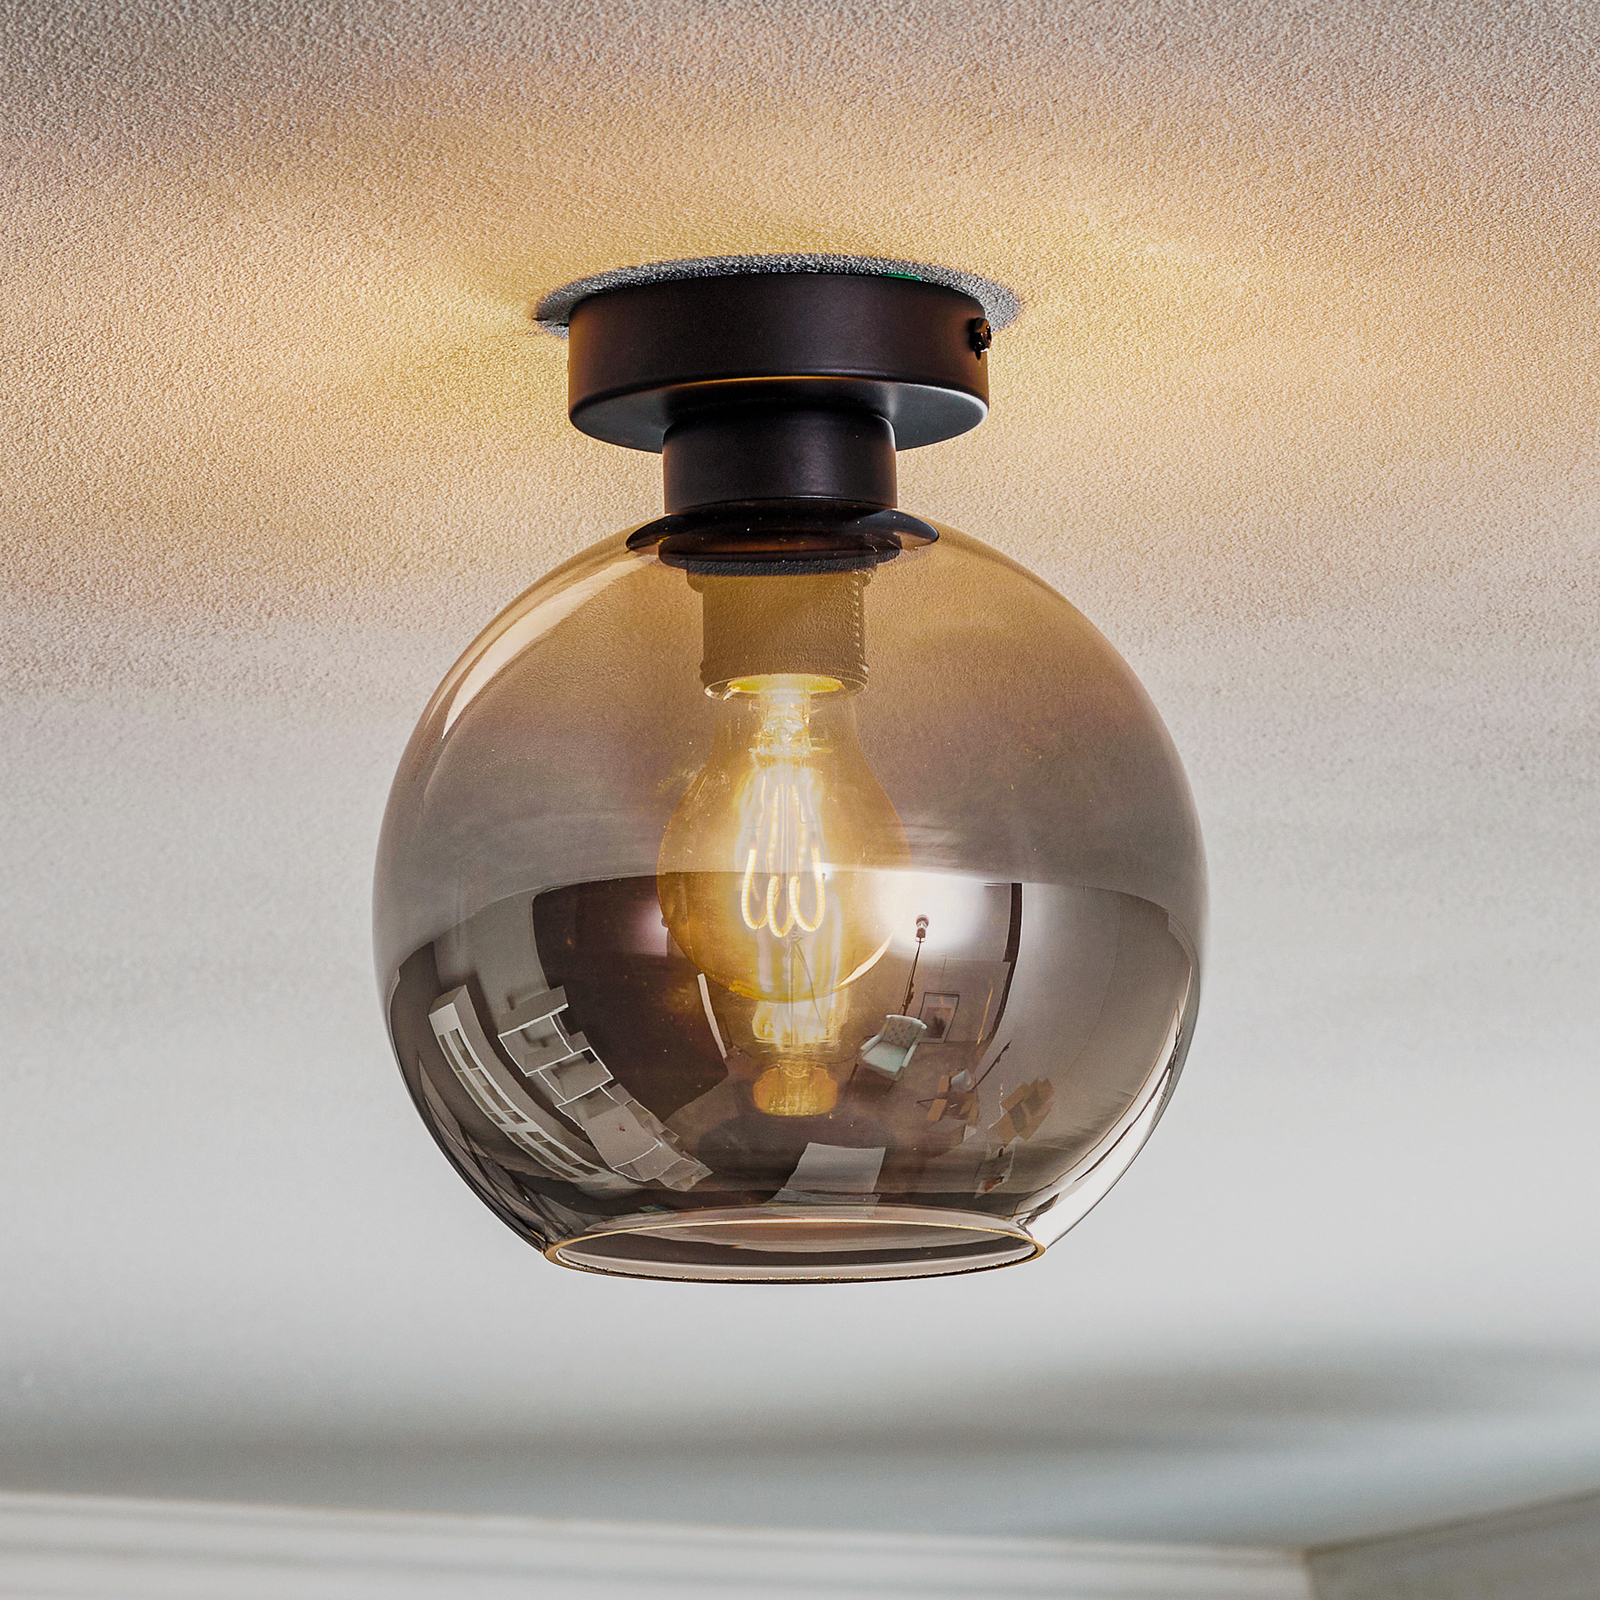 Sofia ceiling light, smoky grey glass lampshade